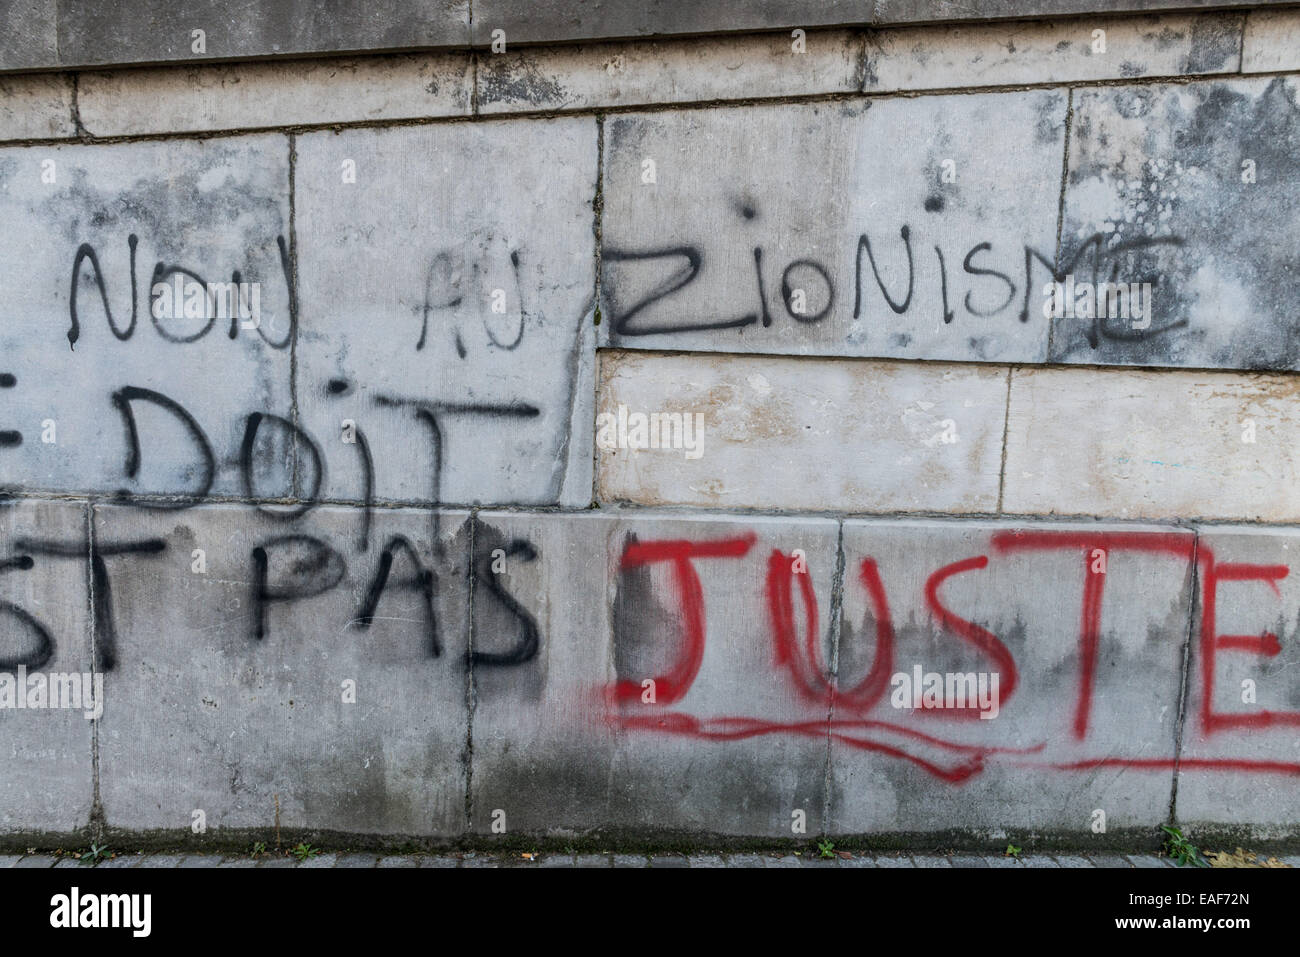 Bruxelles couvert de graffitis anti-austérité du gouvernement après mars jeudi dernier. Banque D'Images